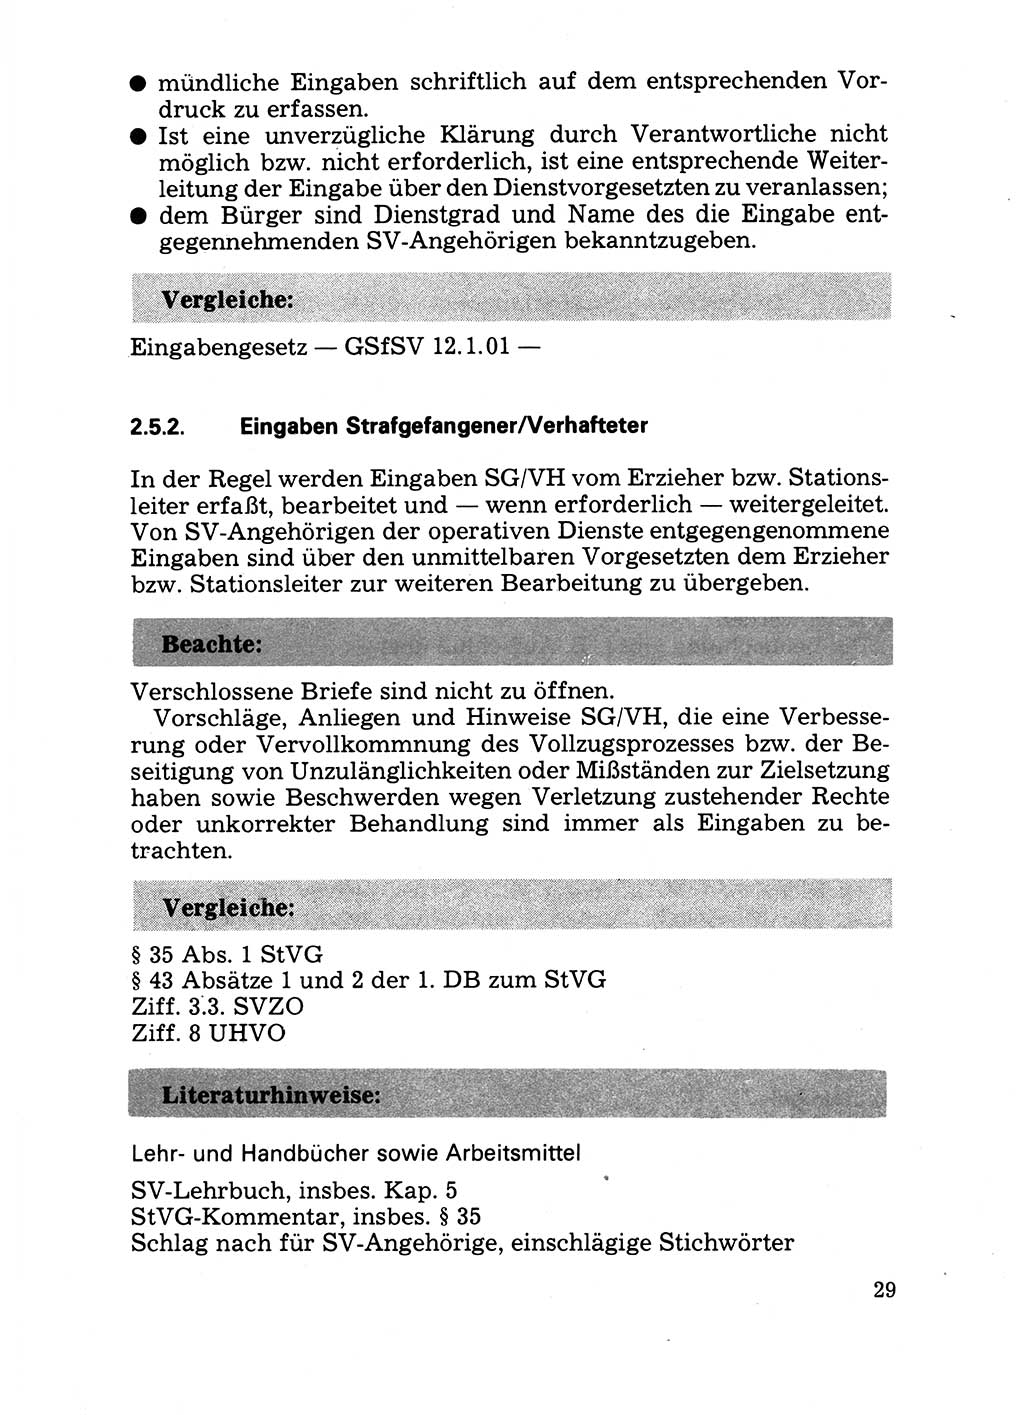 Handbuch für operative Dienste, Abteilung Strafvollzug (SV) [Ministerium des Innern (MdI) Deutsche Demokratische Republik (DDR)] 1981, Seite 29 (Hb. op. D. Abt. SV MdI DDR 1981, S. 29)